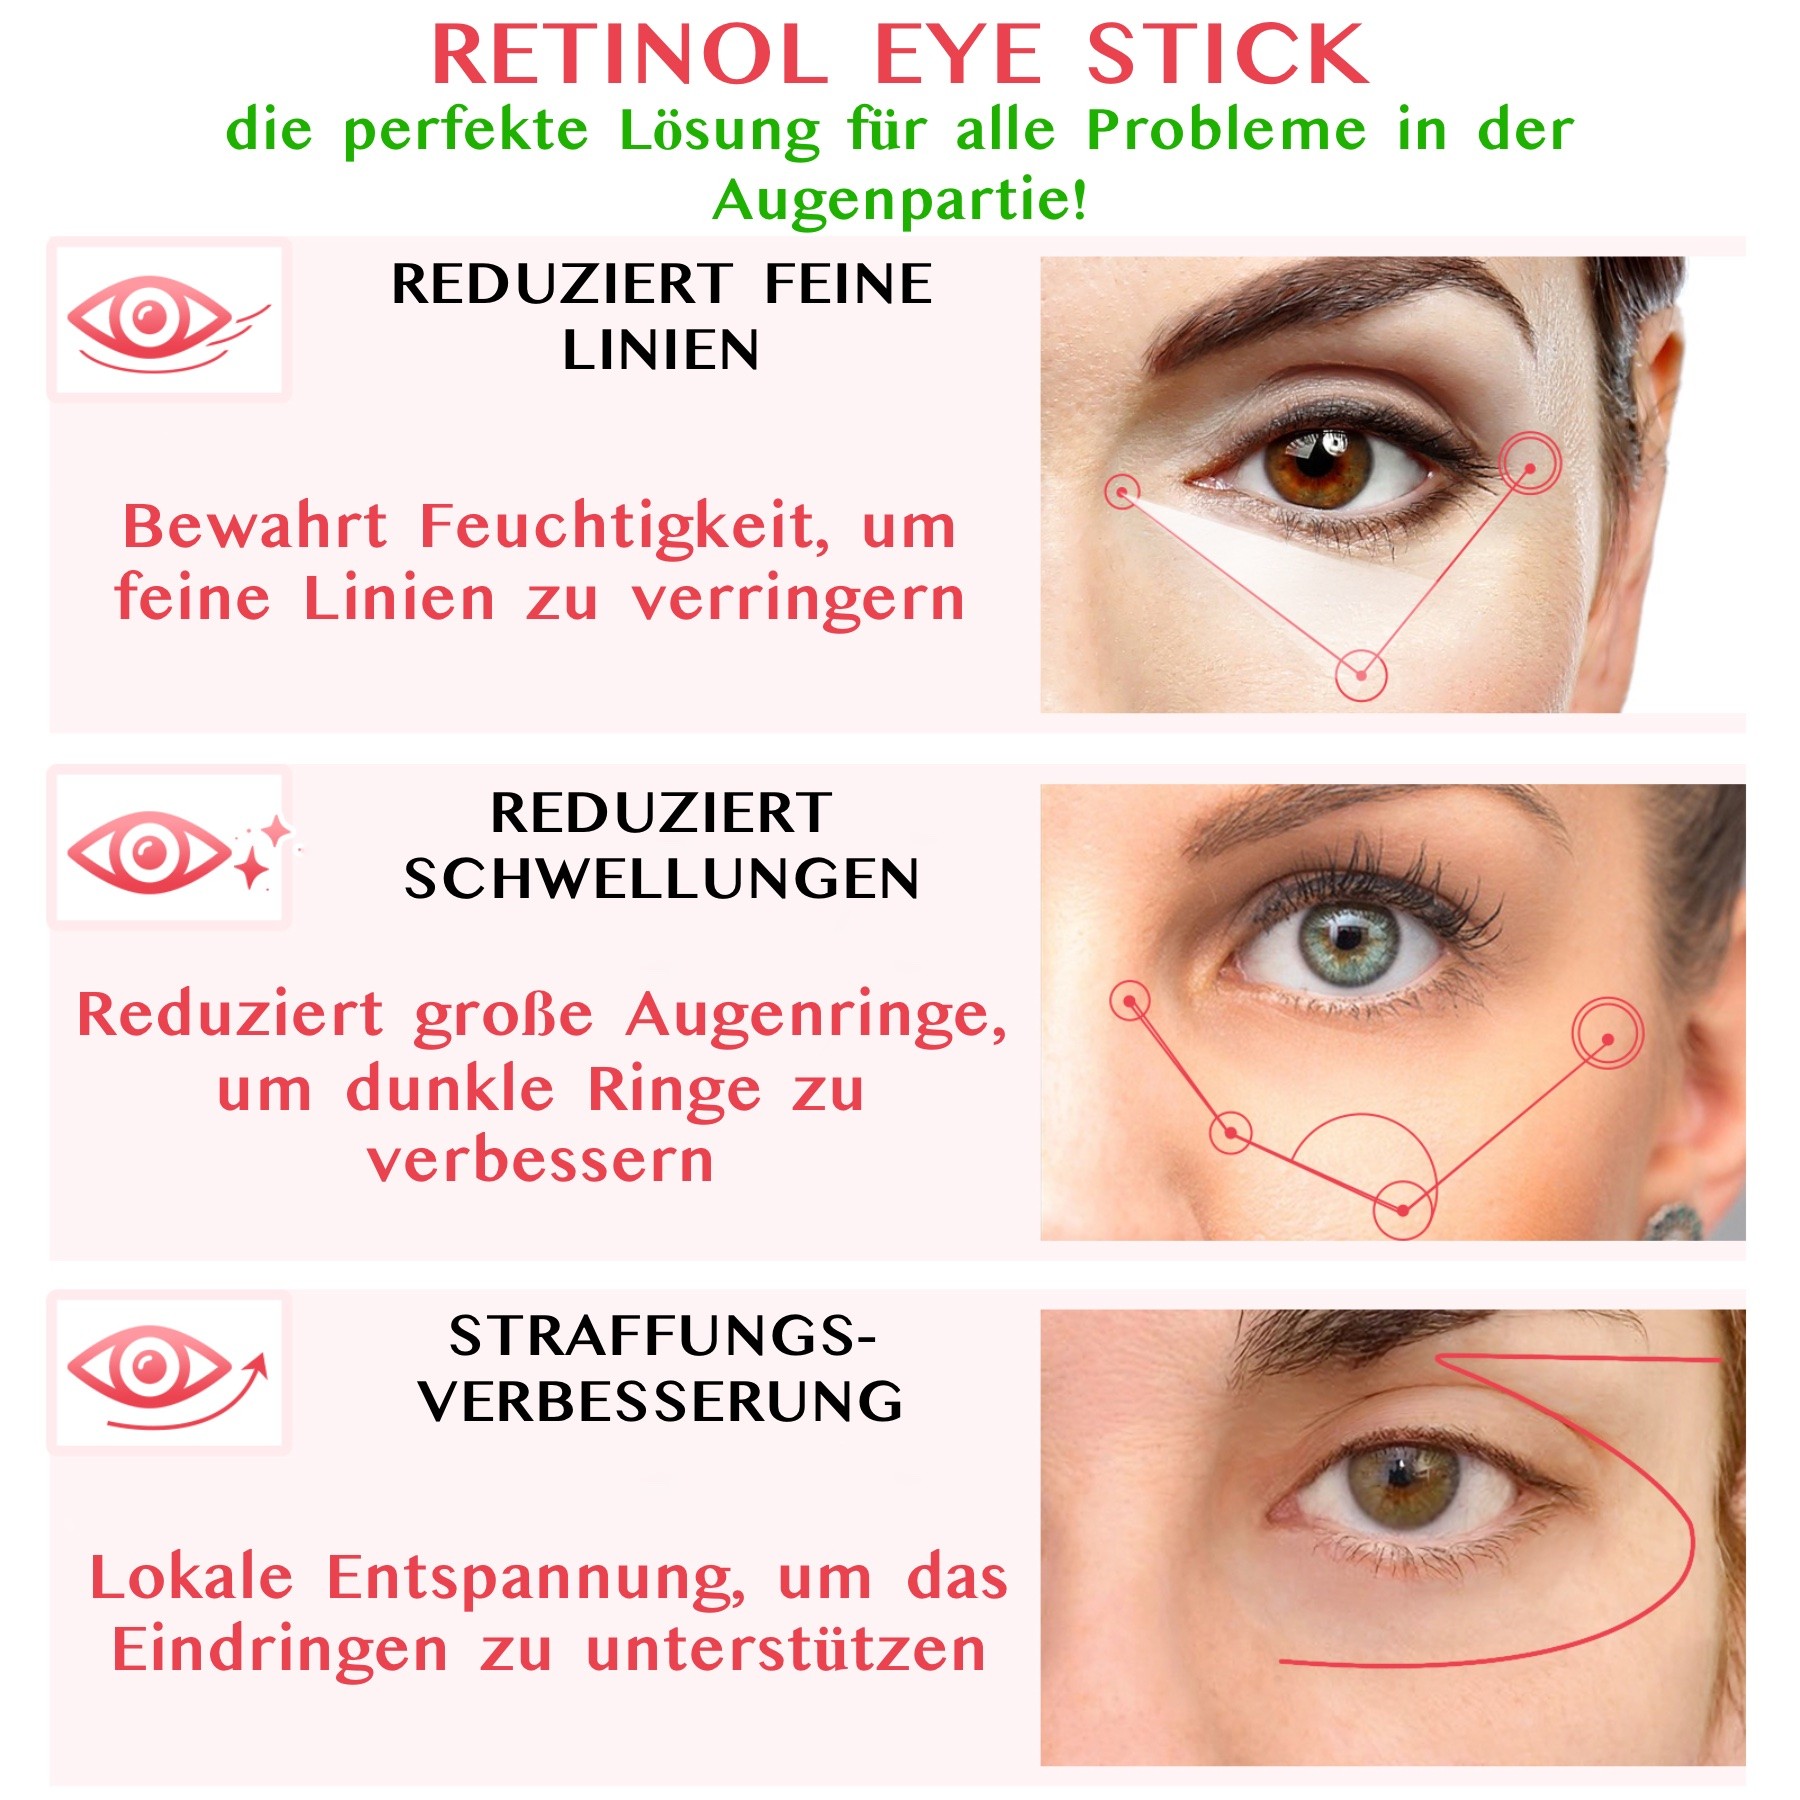 Augencreme Anti Aging Falten Augenpflege mit Retinol Kollagen Hyaluronsäure